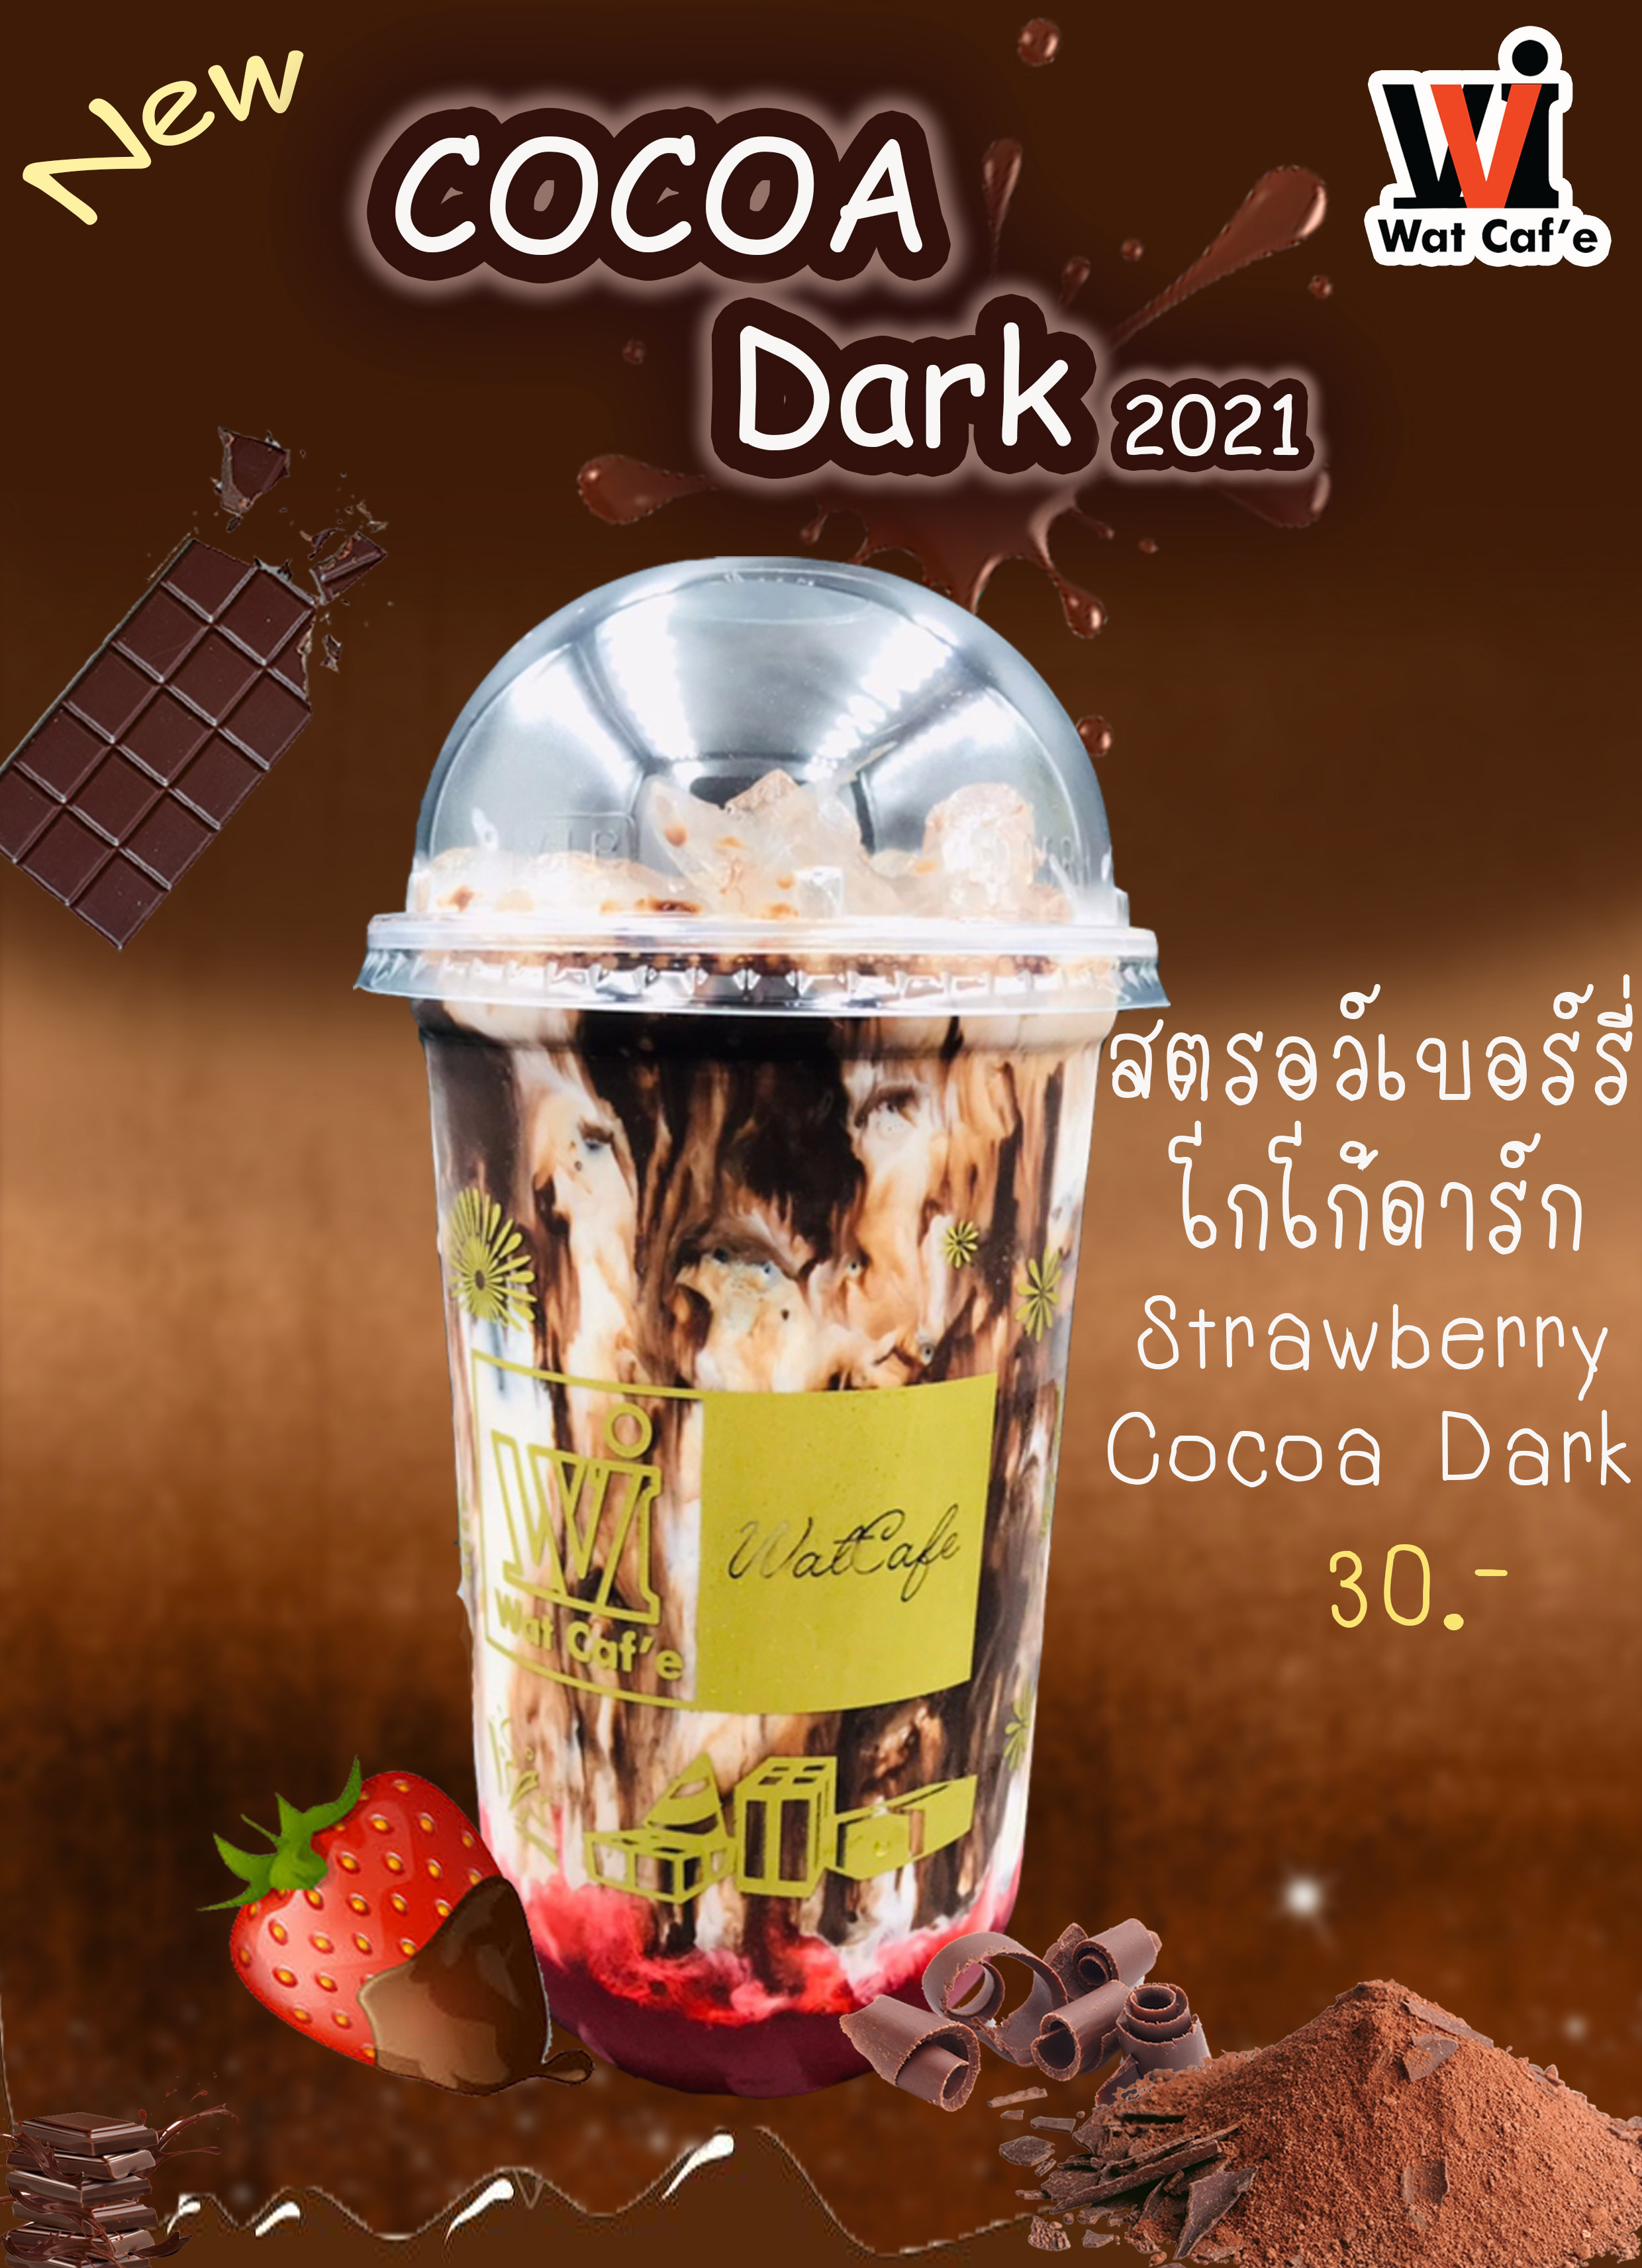 Strawberry Cocoa Dark